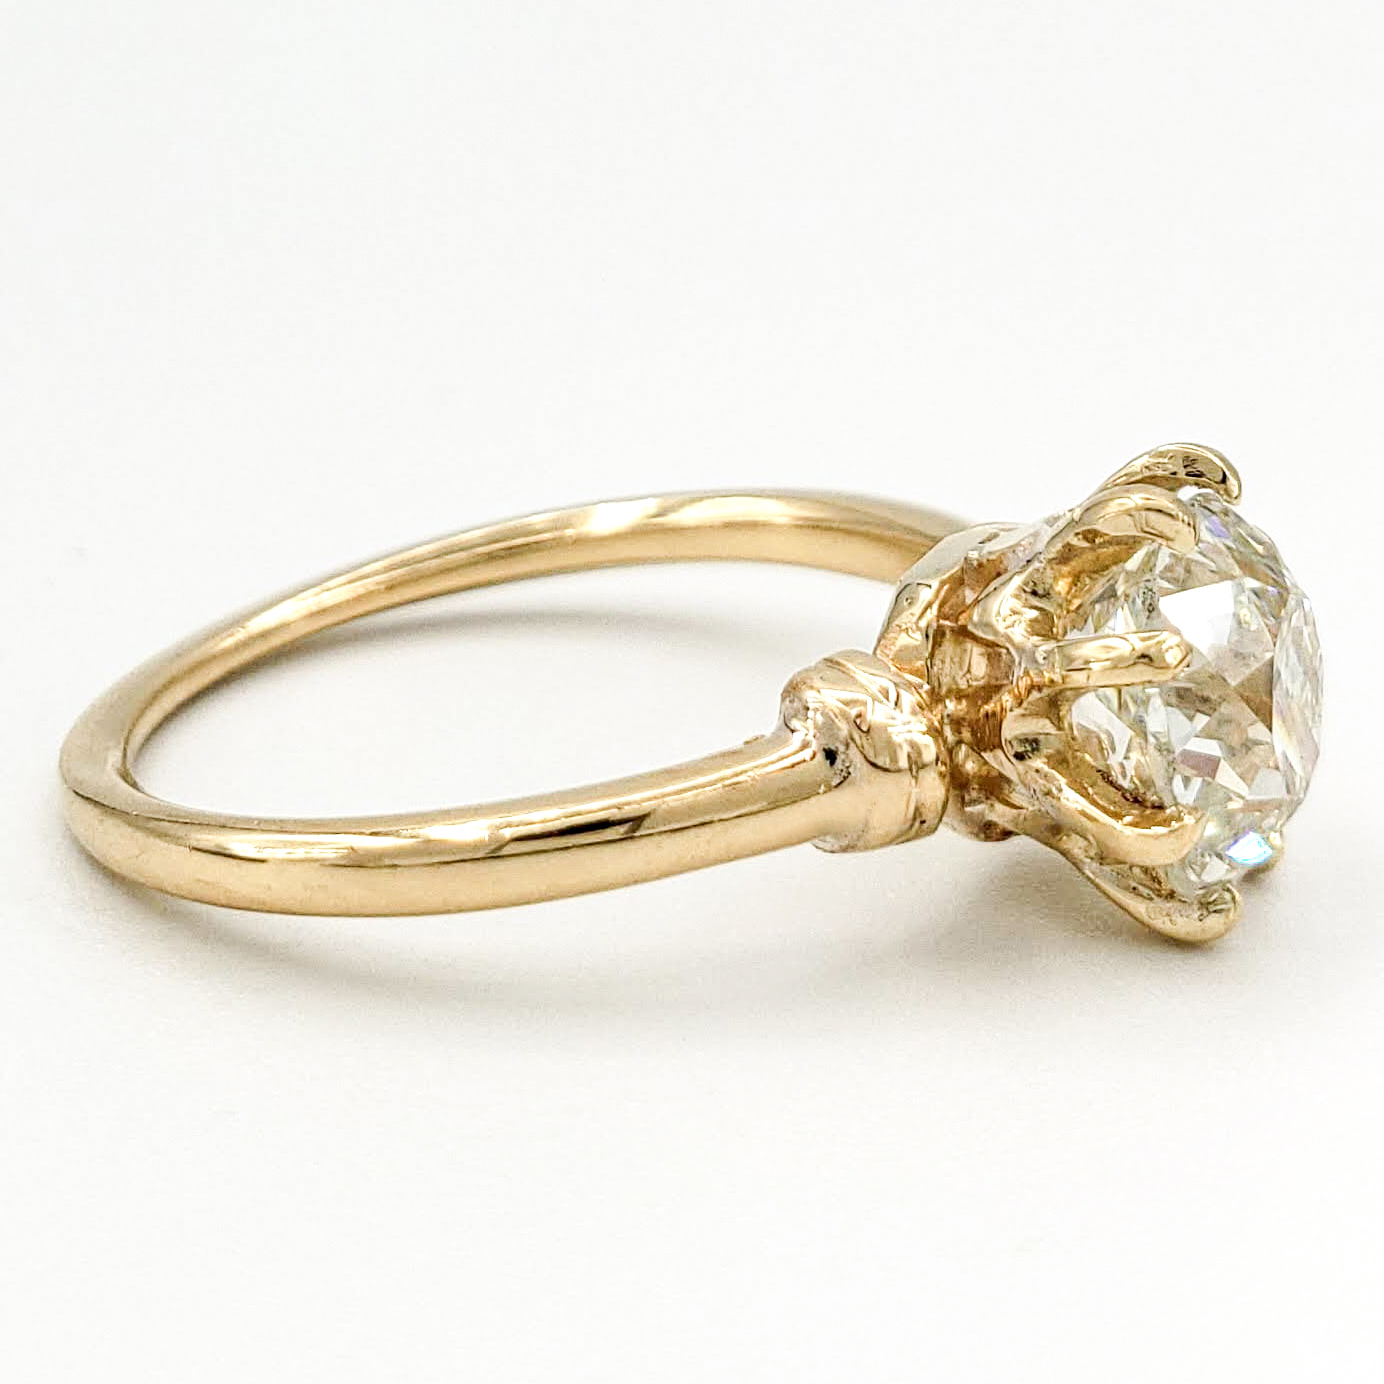 Vintage 18 Karat Engagement Ring With 1.63 Carat Old European Cut Diamond GIA – L SI2